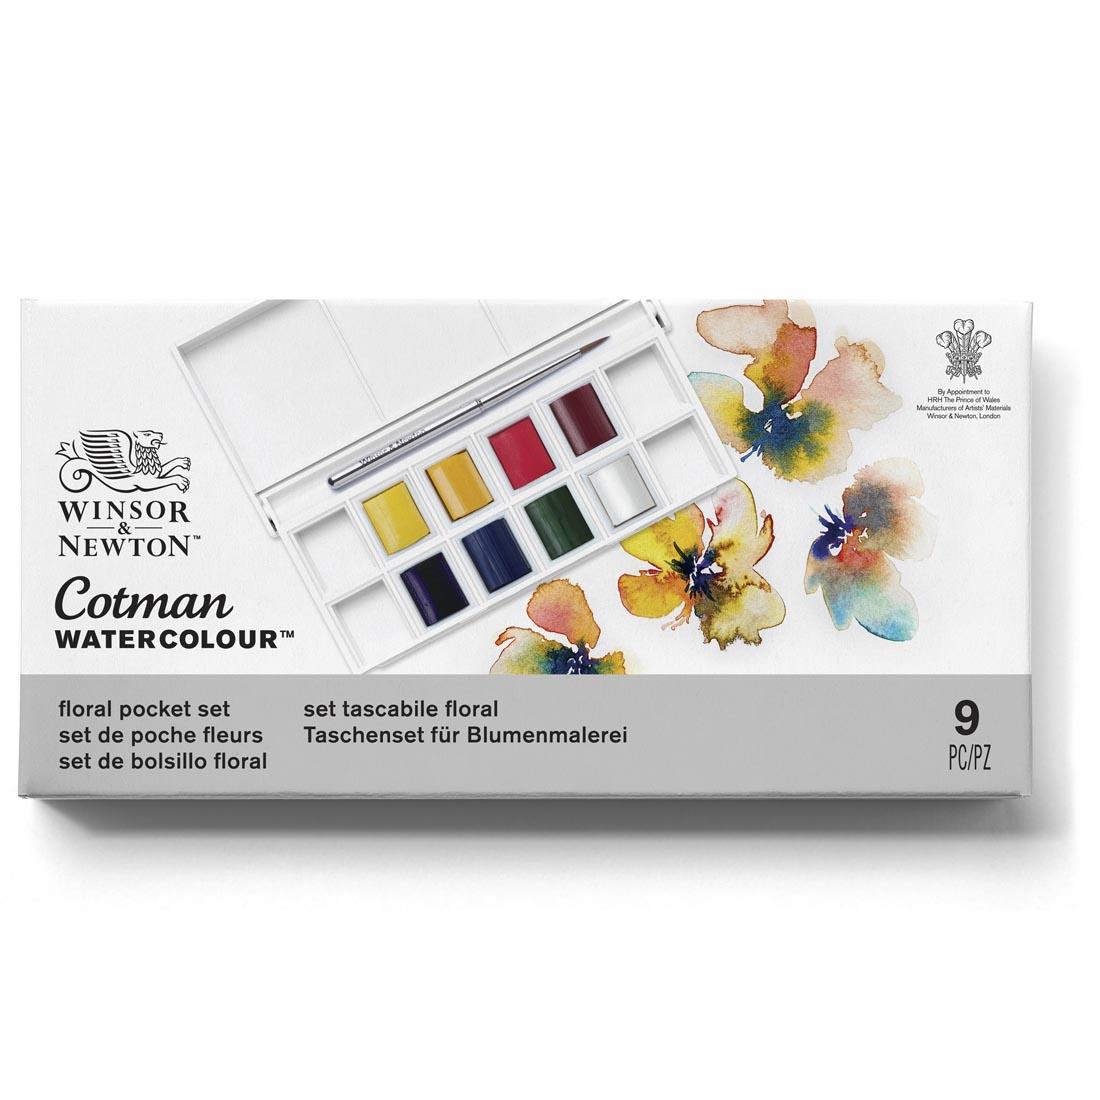 Winsor & Newton Cotman Water Colour Floral Pocket Set